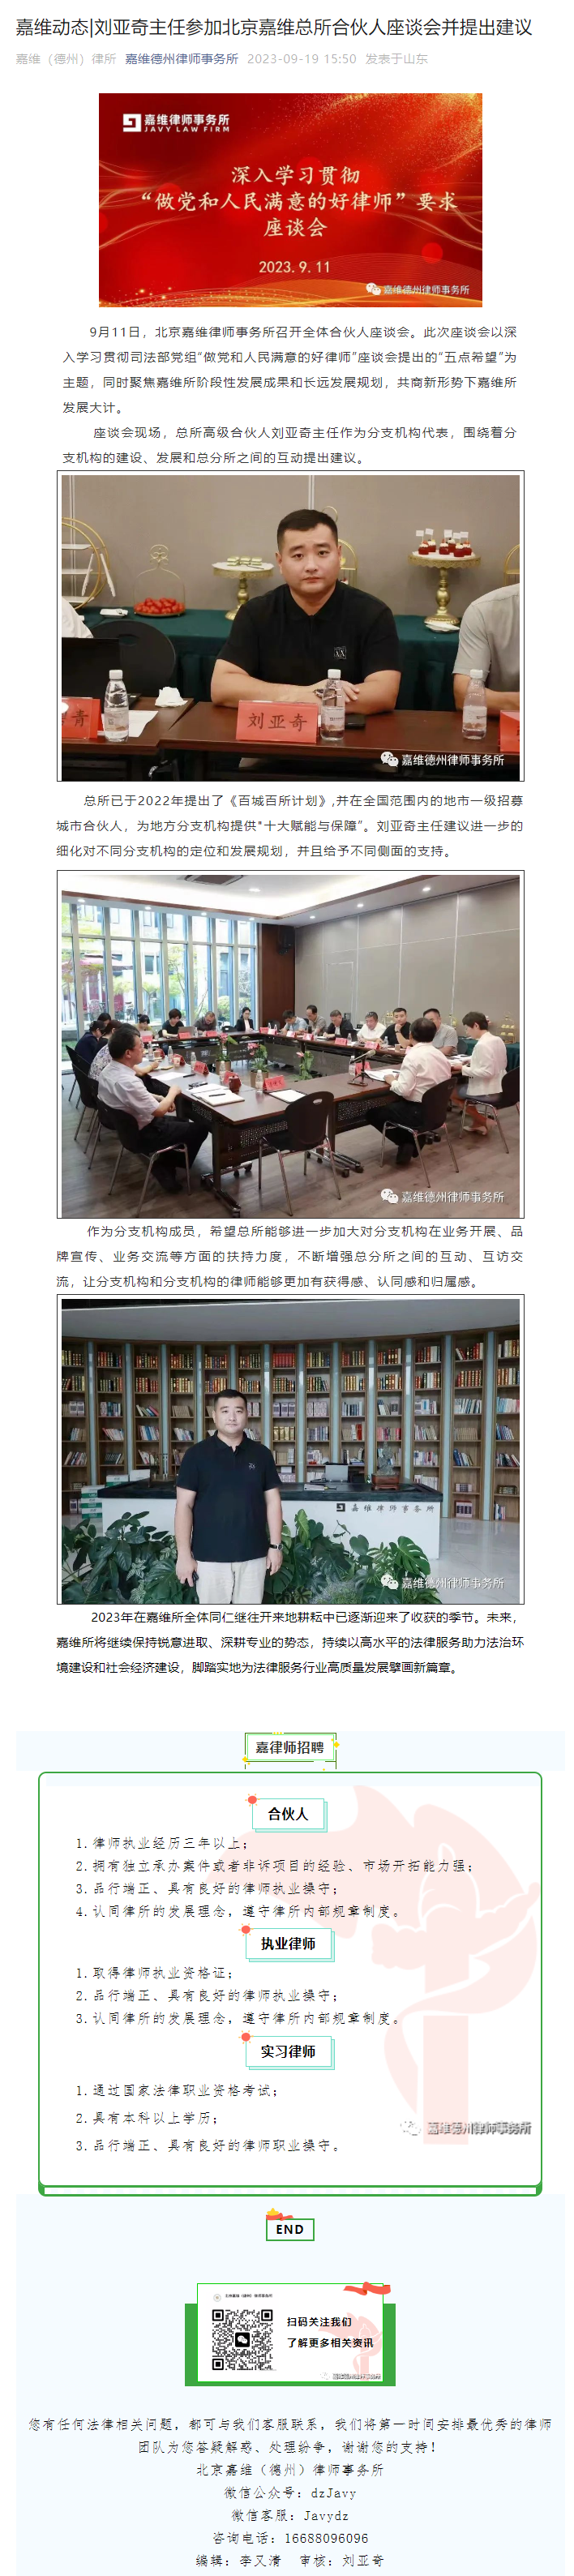 刘亚奇主任参加北京嘉潍总所合伙人座谈会并提出建议